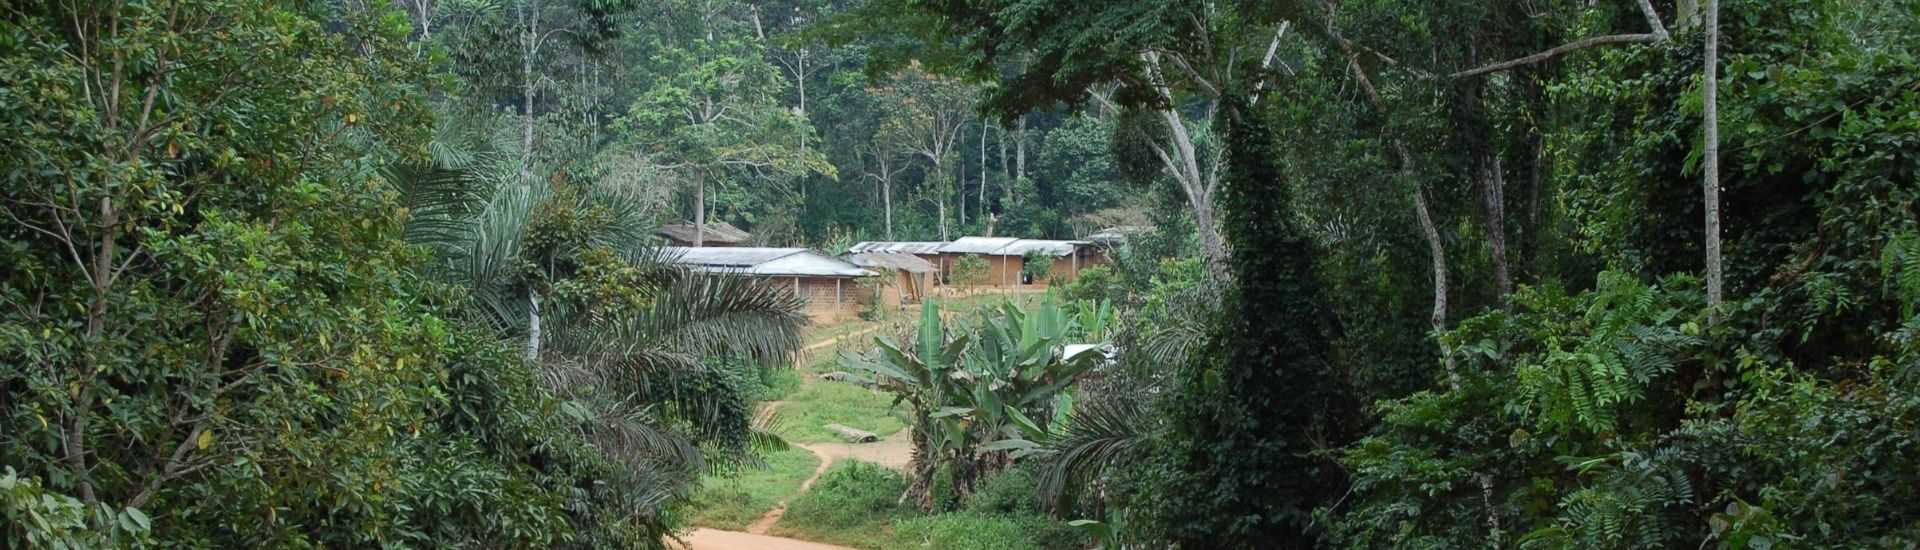 village de forêt afrique